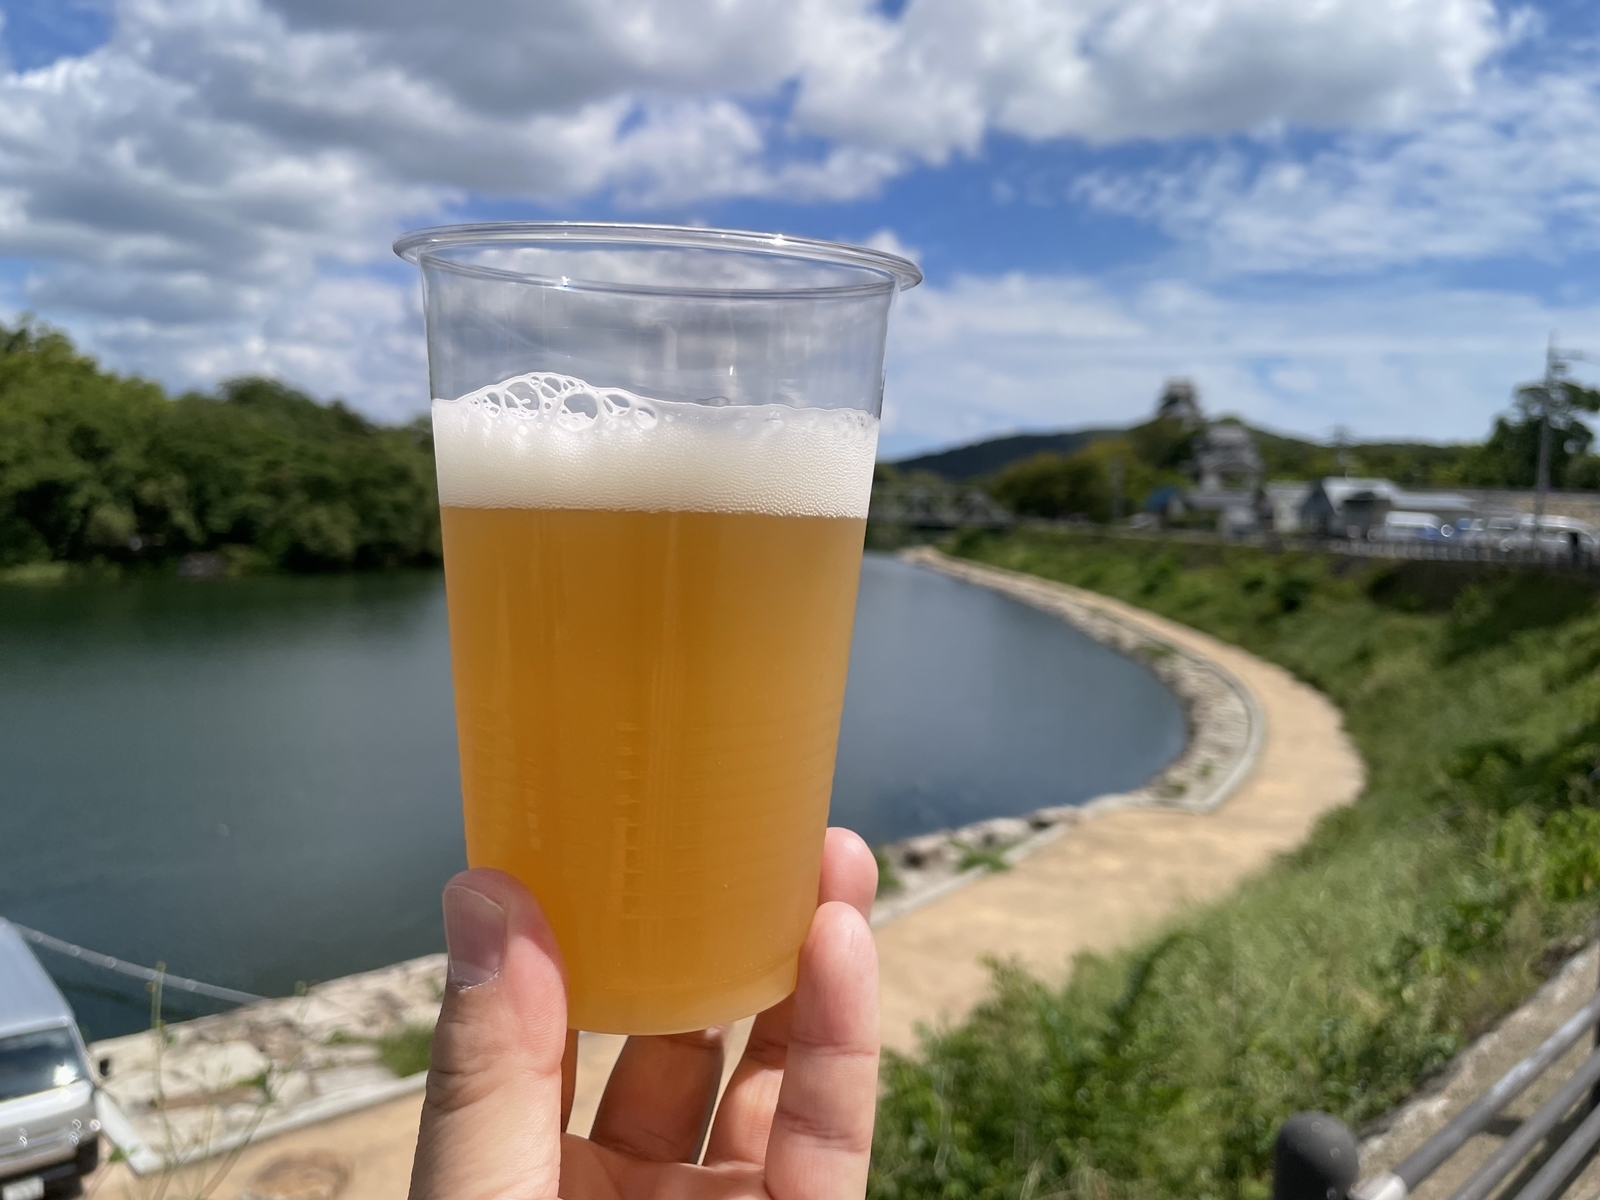 「Kawazu Brewing」の「Peach Boy Golden Ale」※他イベントでの画像